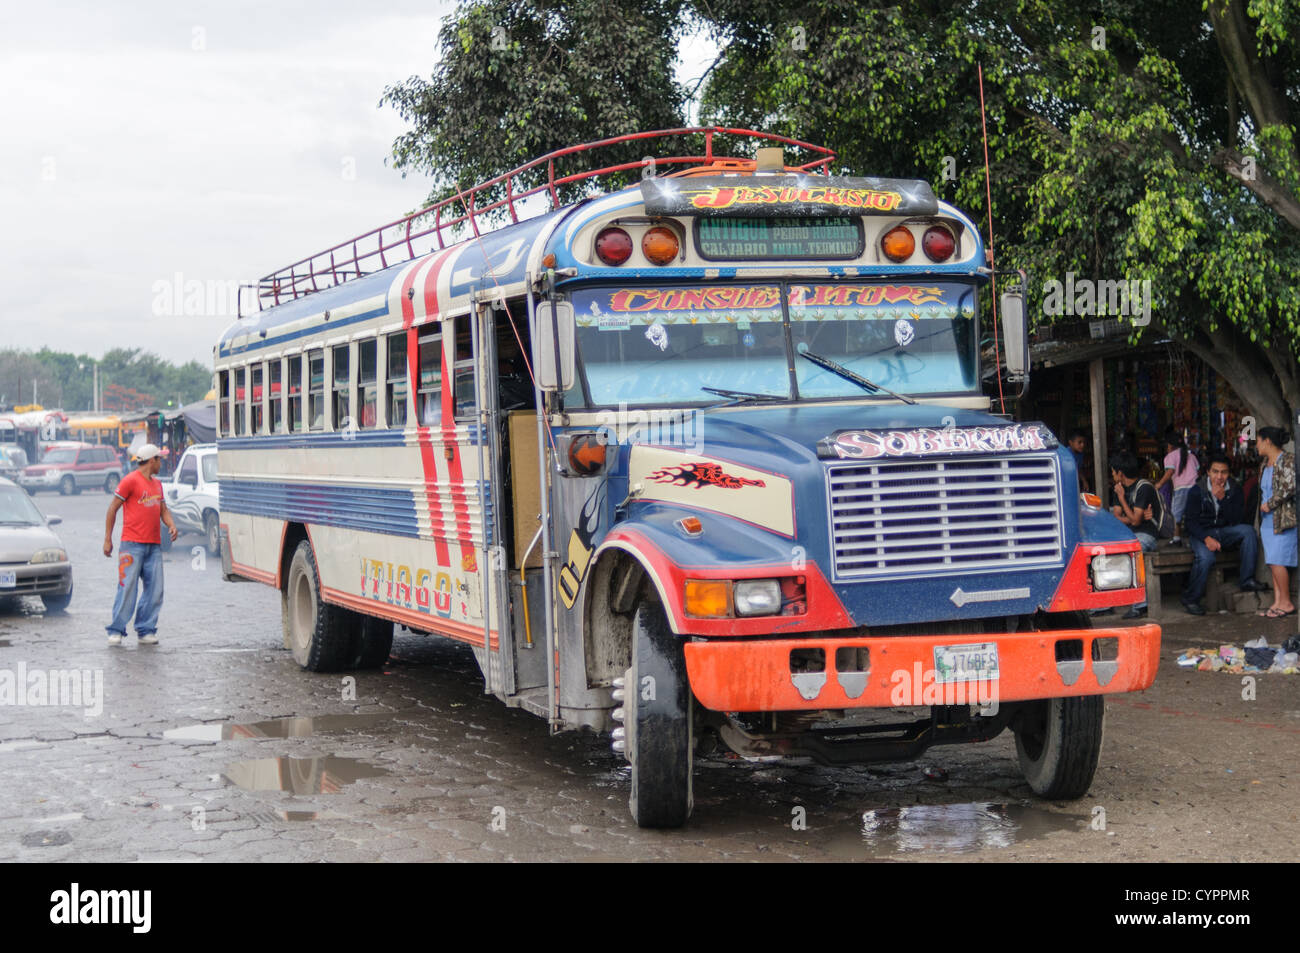 Ein Huhn Bus hinter dem Mercado Municipal (Stadtmarkt) in Antigua, Guatemala. Aus diesem umfangreichen zentralen Busbahnhof strahlenförmig der Routen in Guatemala. Oft bunt bemalt, die Huhn-Busse sind nachgerüsteten amerikanische Schulbusse und bieten ein günstiges Transportmittel im ganzen Land. Stockfoto